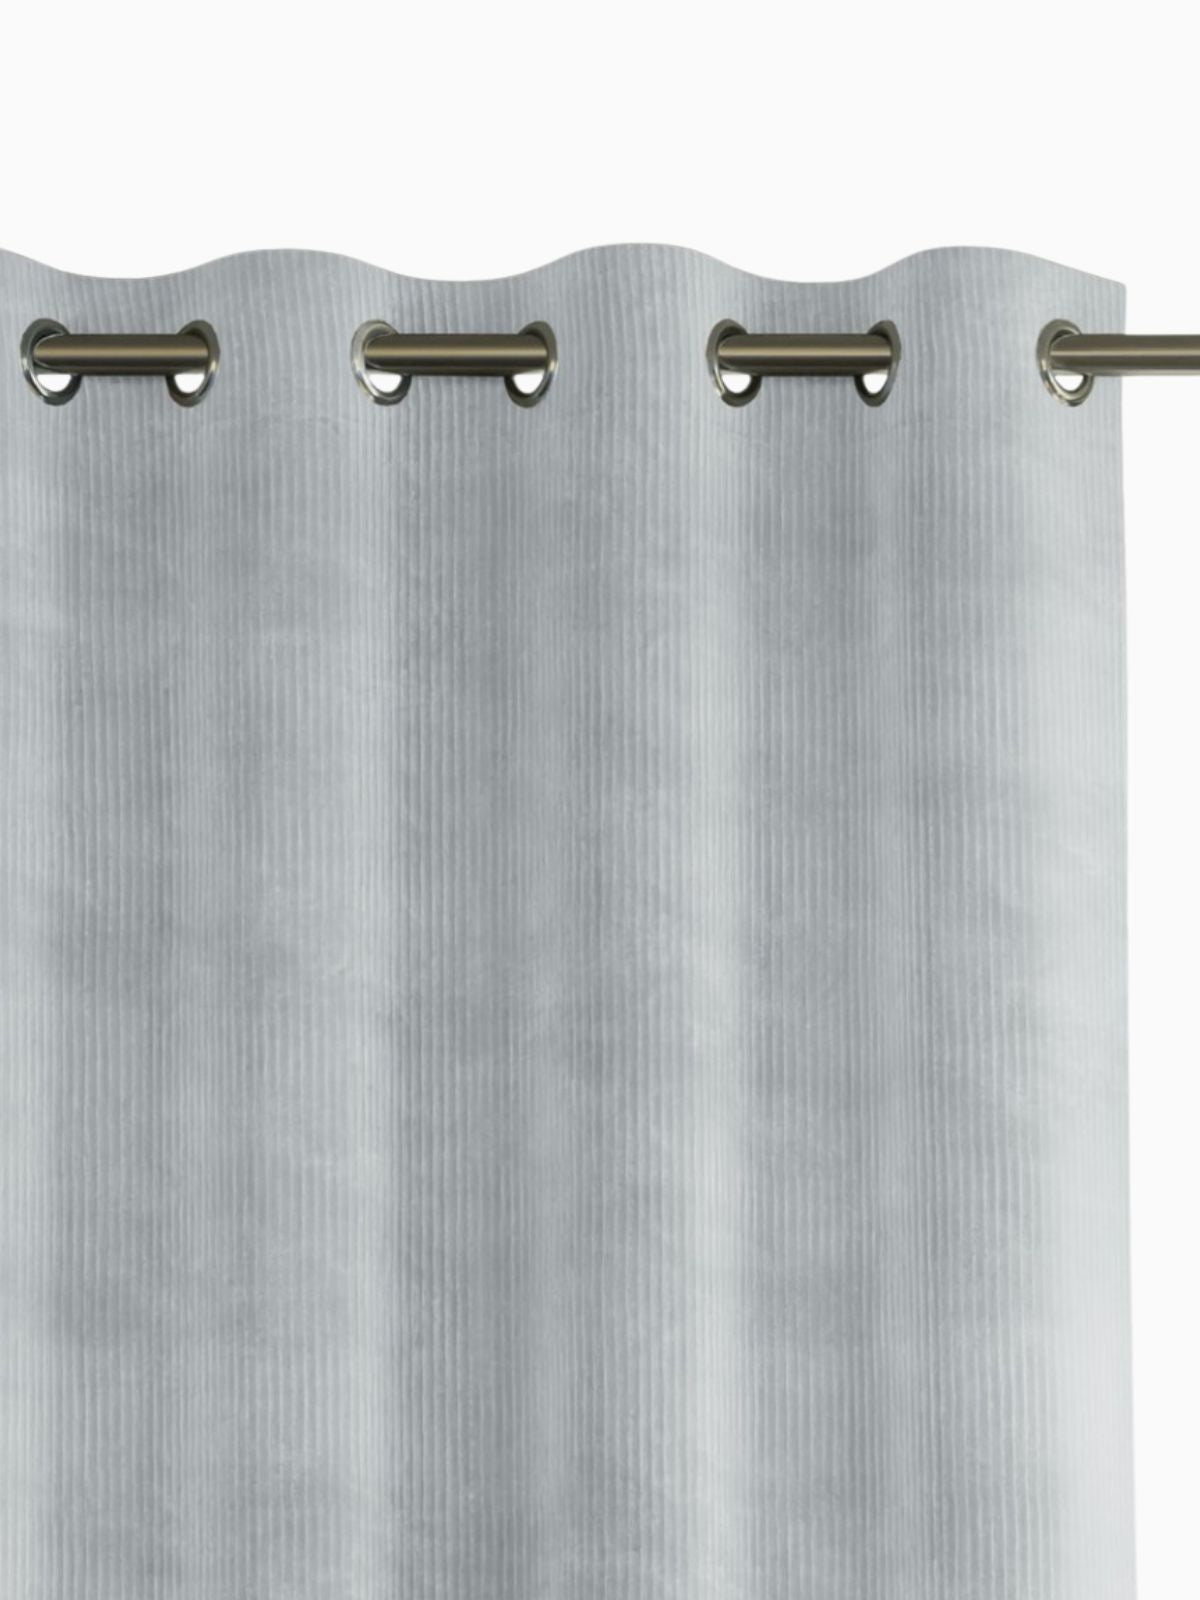 Tenda Duffy in colore grigio 140x250 cm.-1